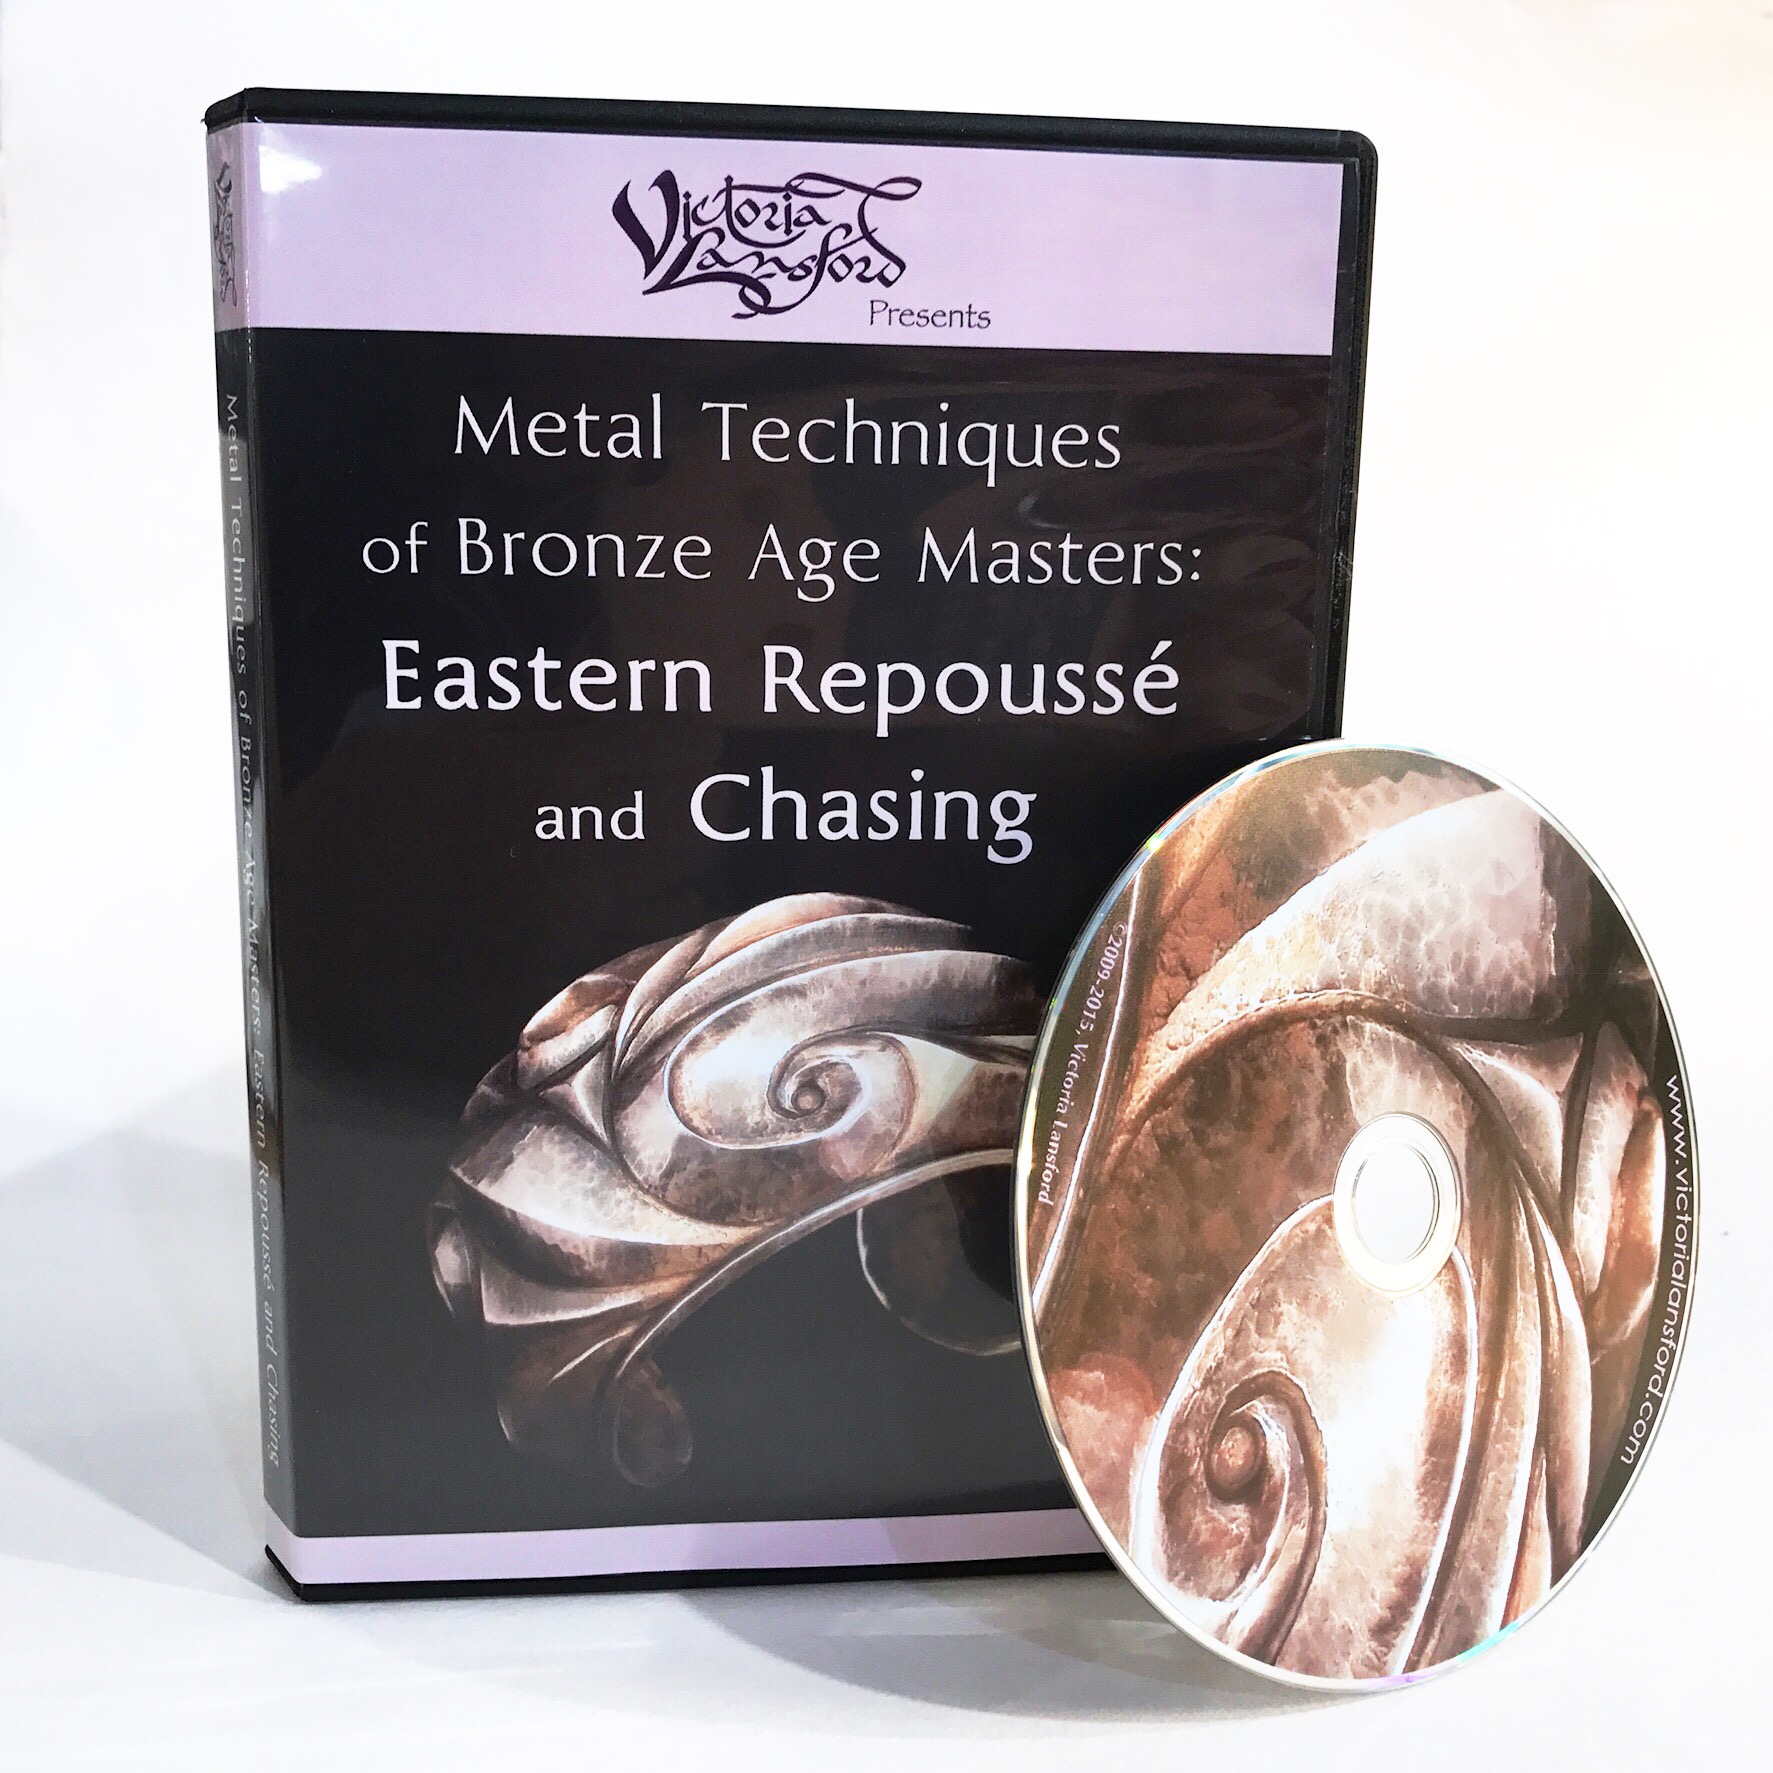 METAL EMBOSSING KIT, Metal Craft Kit, 4 pcs Repousse Metalwork Kit